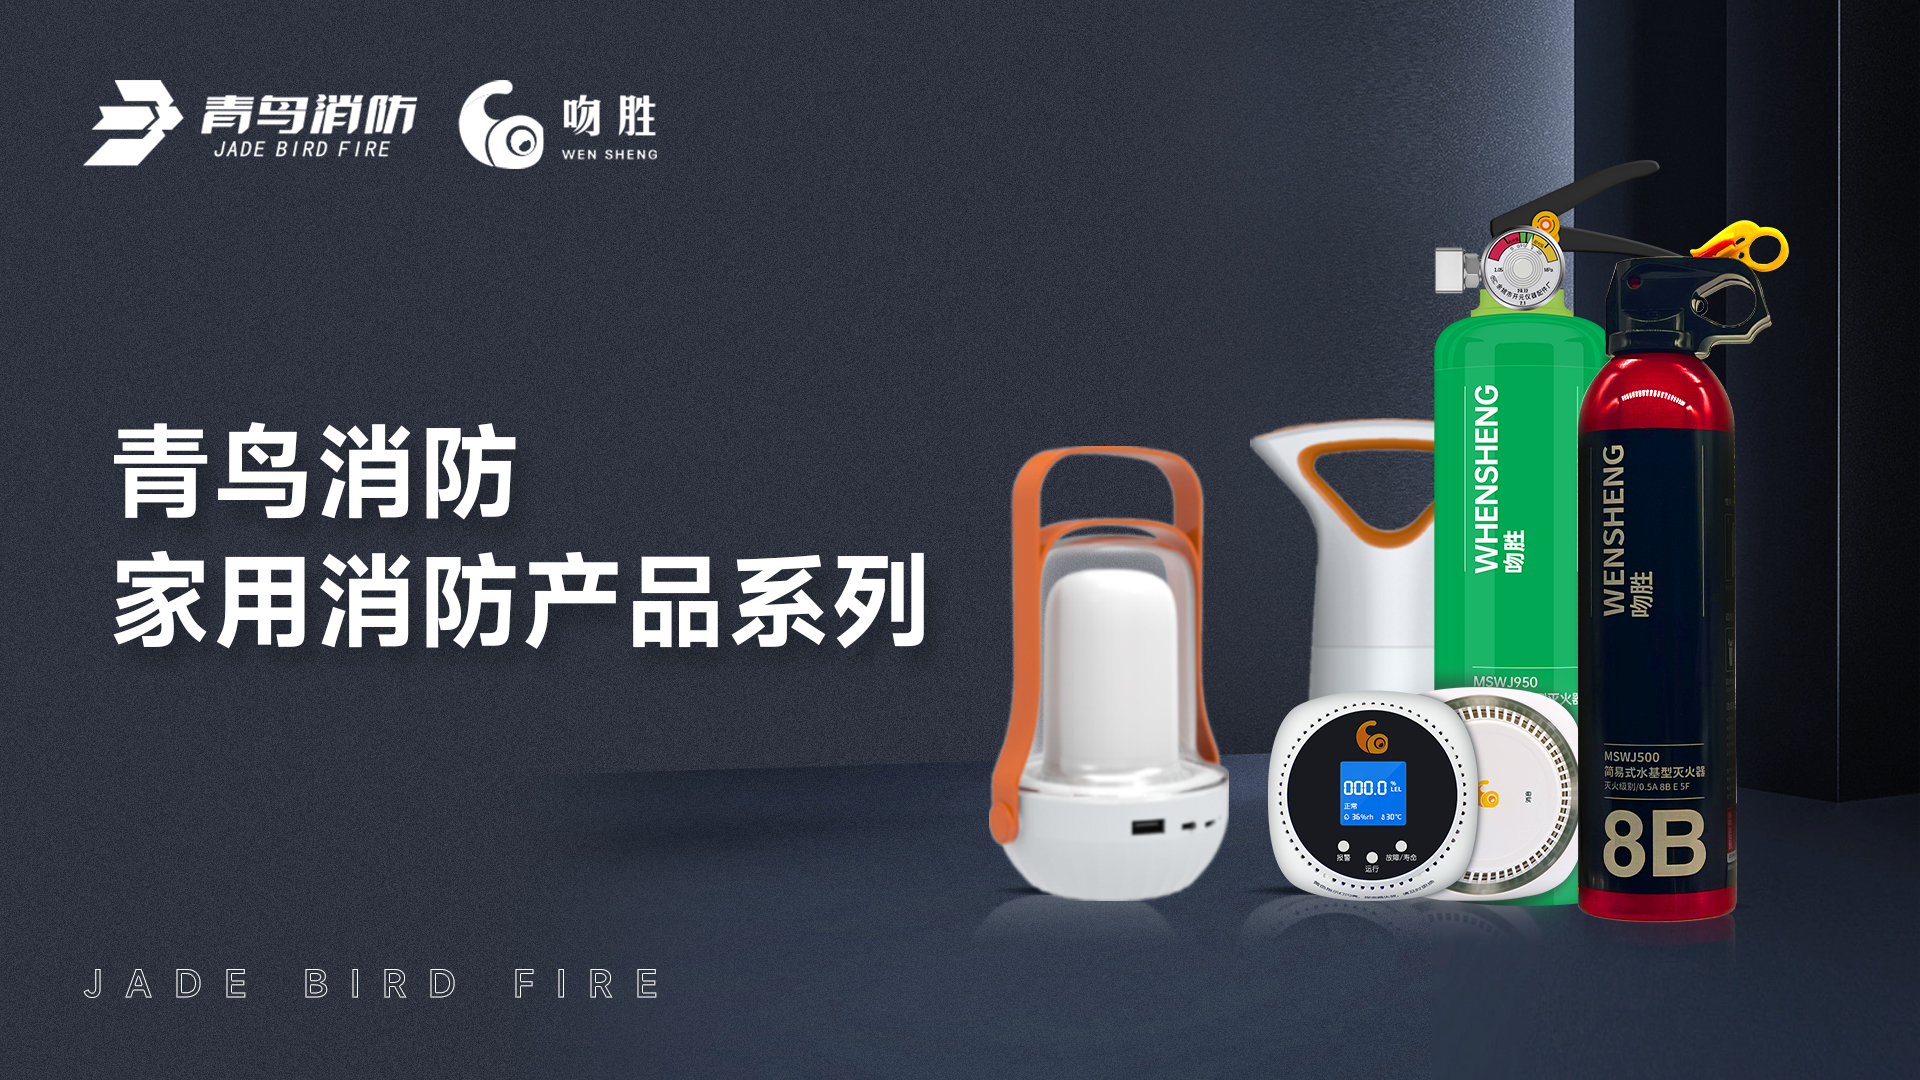 金年会app下载入口
消防 — 家用消防产品系列解决方案